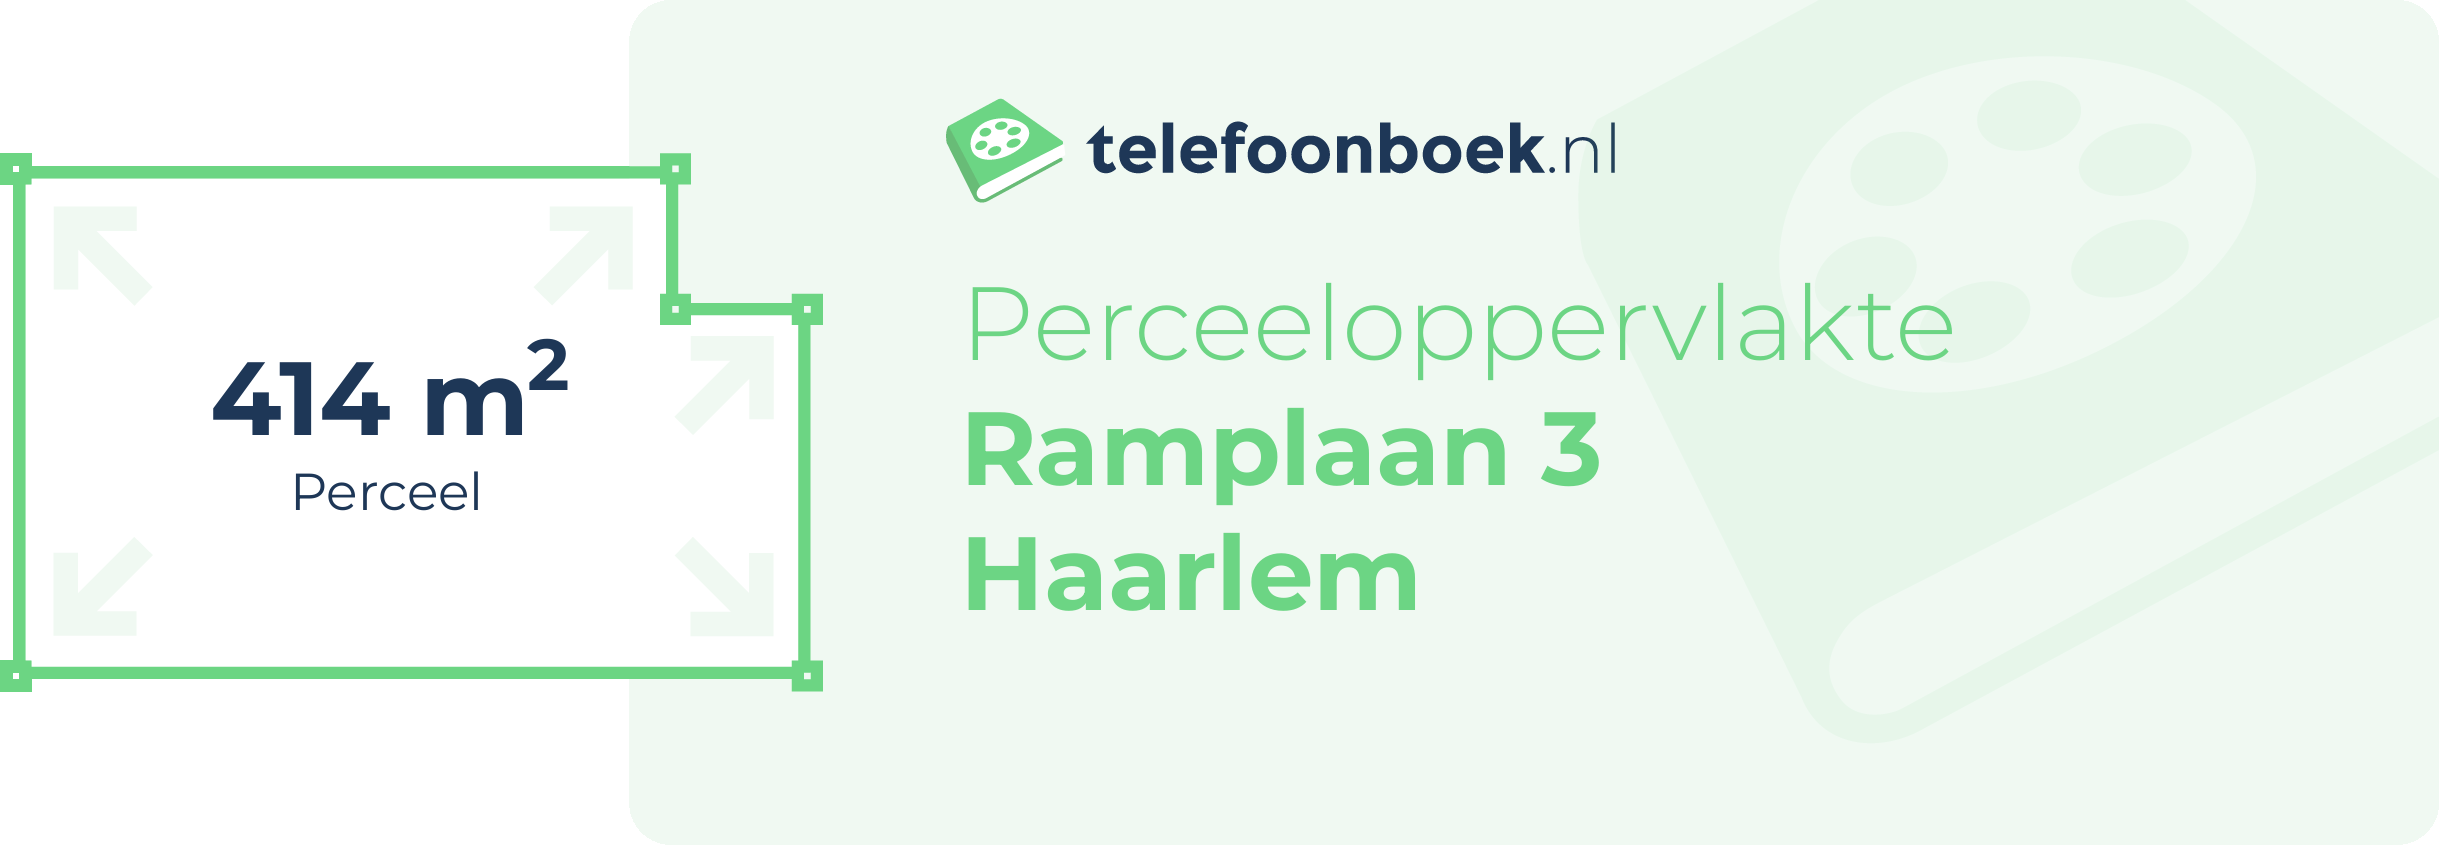 Perceeloppervlakte Ramplaan 3 Haarlem